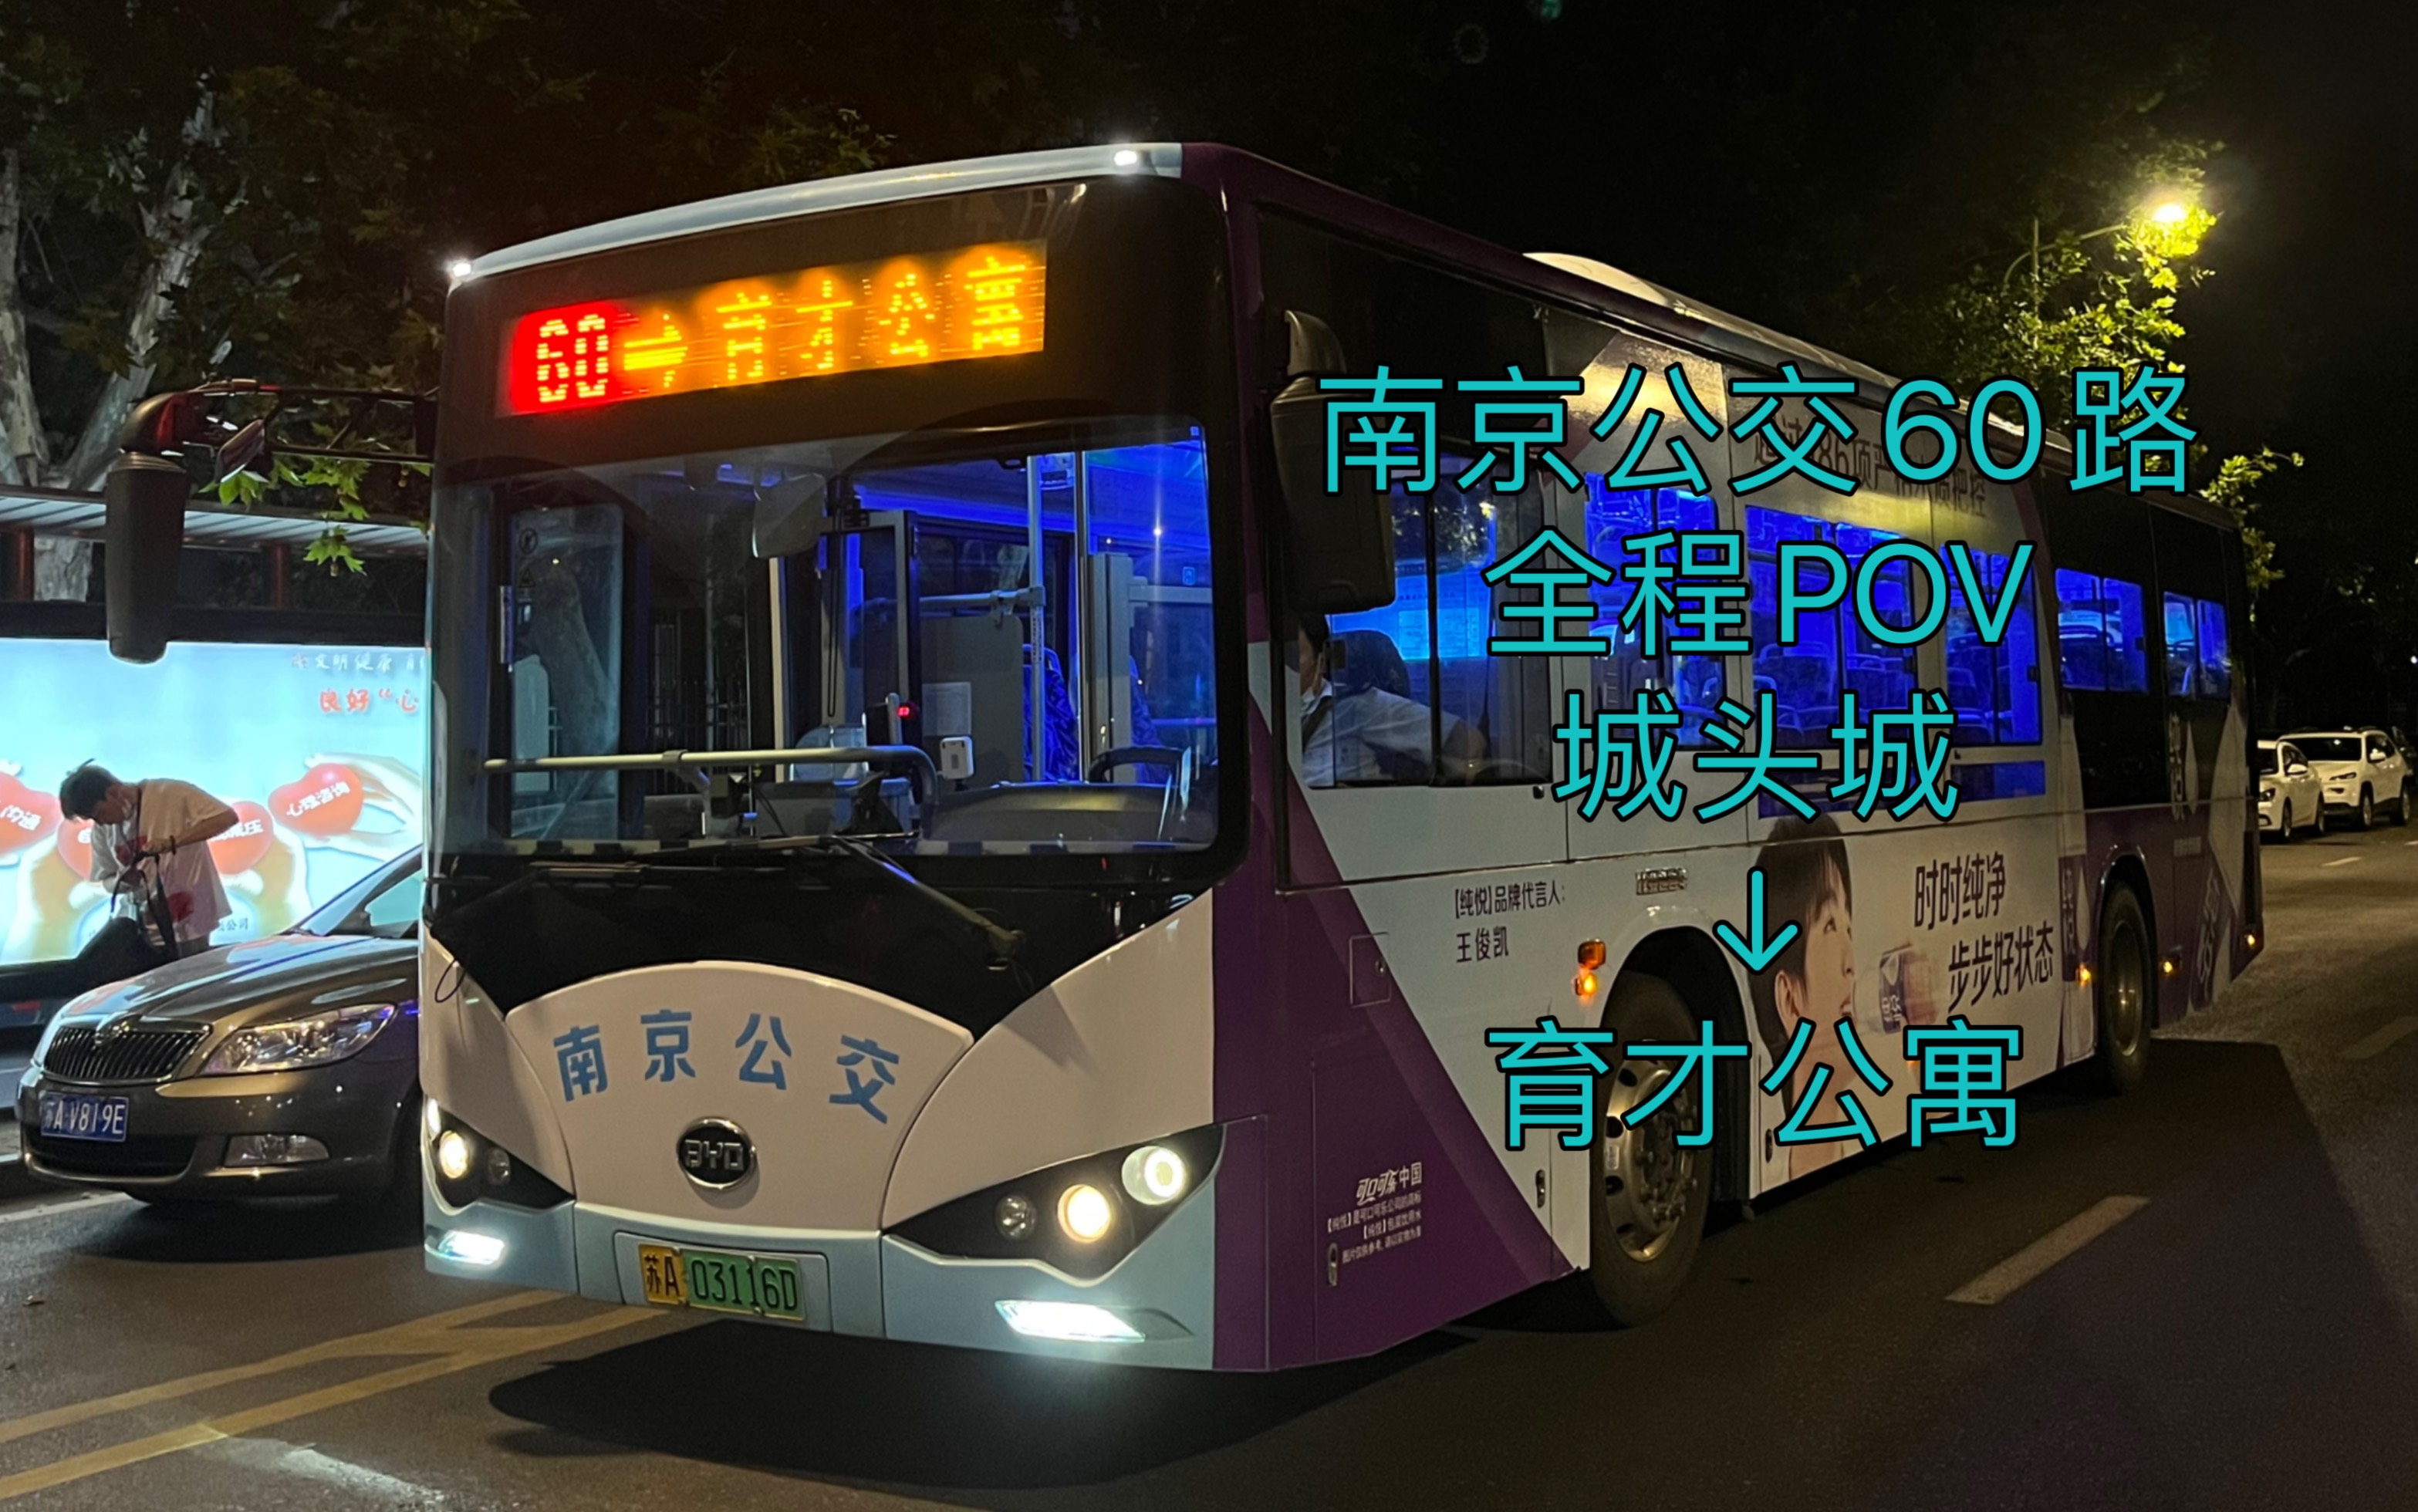 【南京公交】南京公交60路全程pov,城头城开往育才公寓